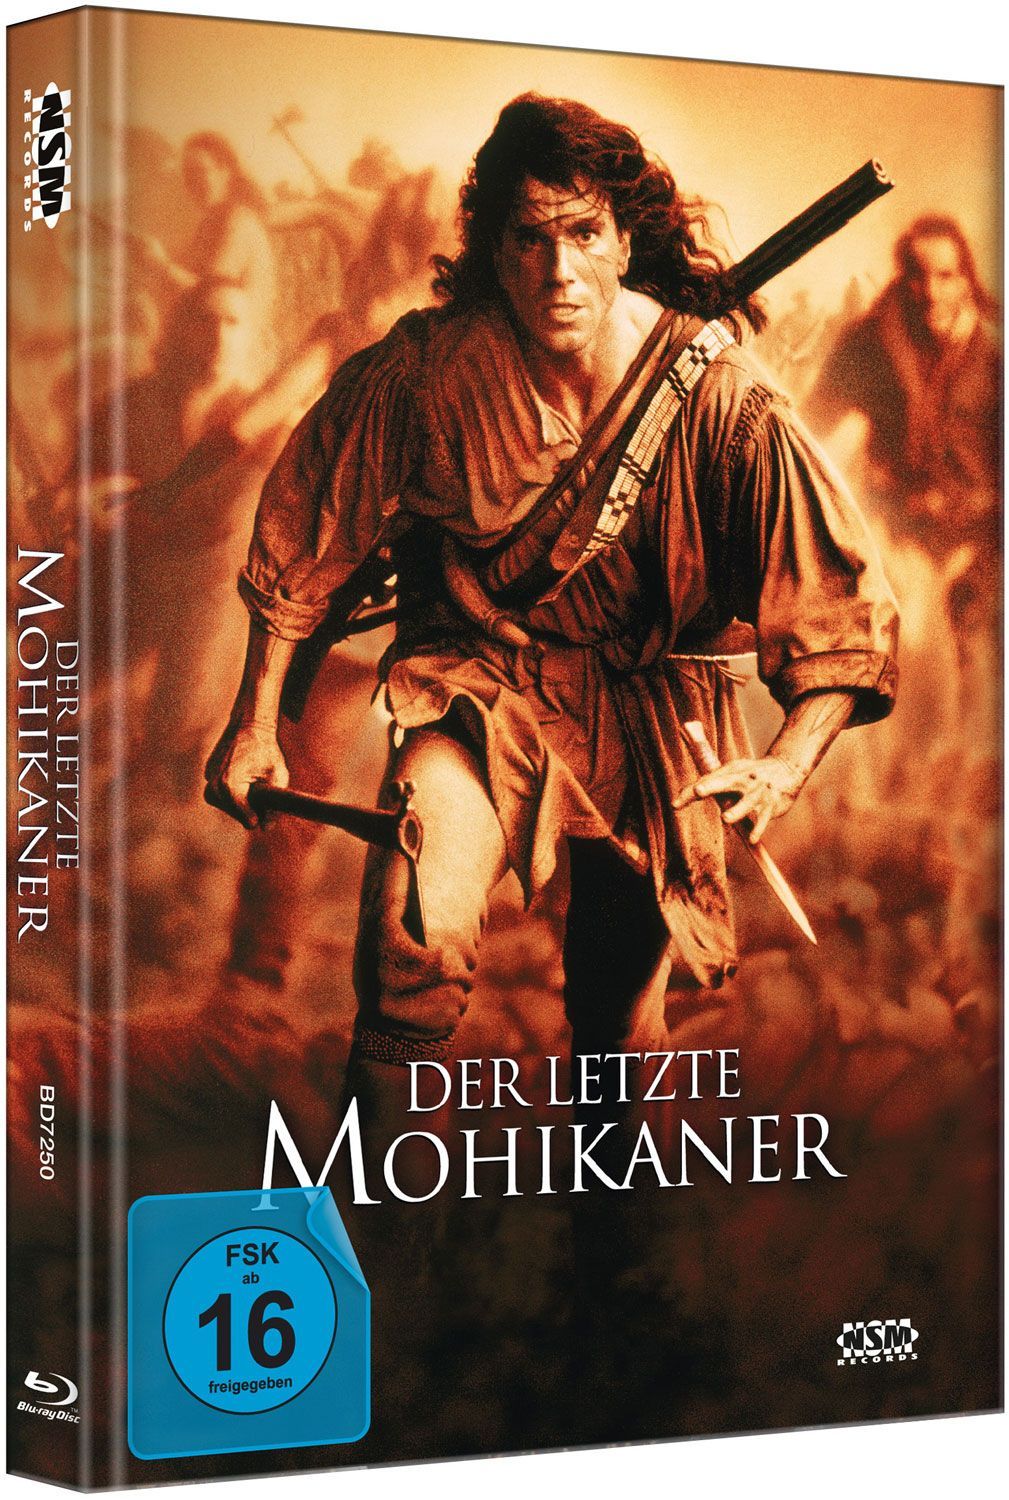 Image of Der letzte Mohikaner - Mediabook